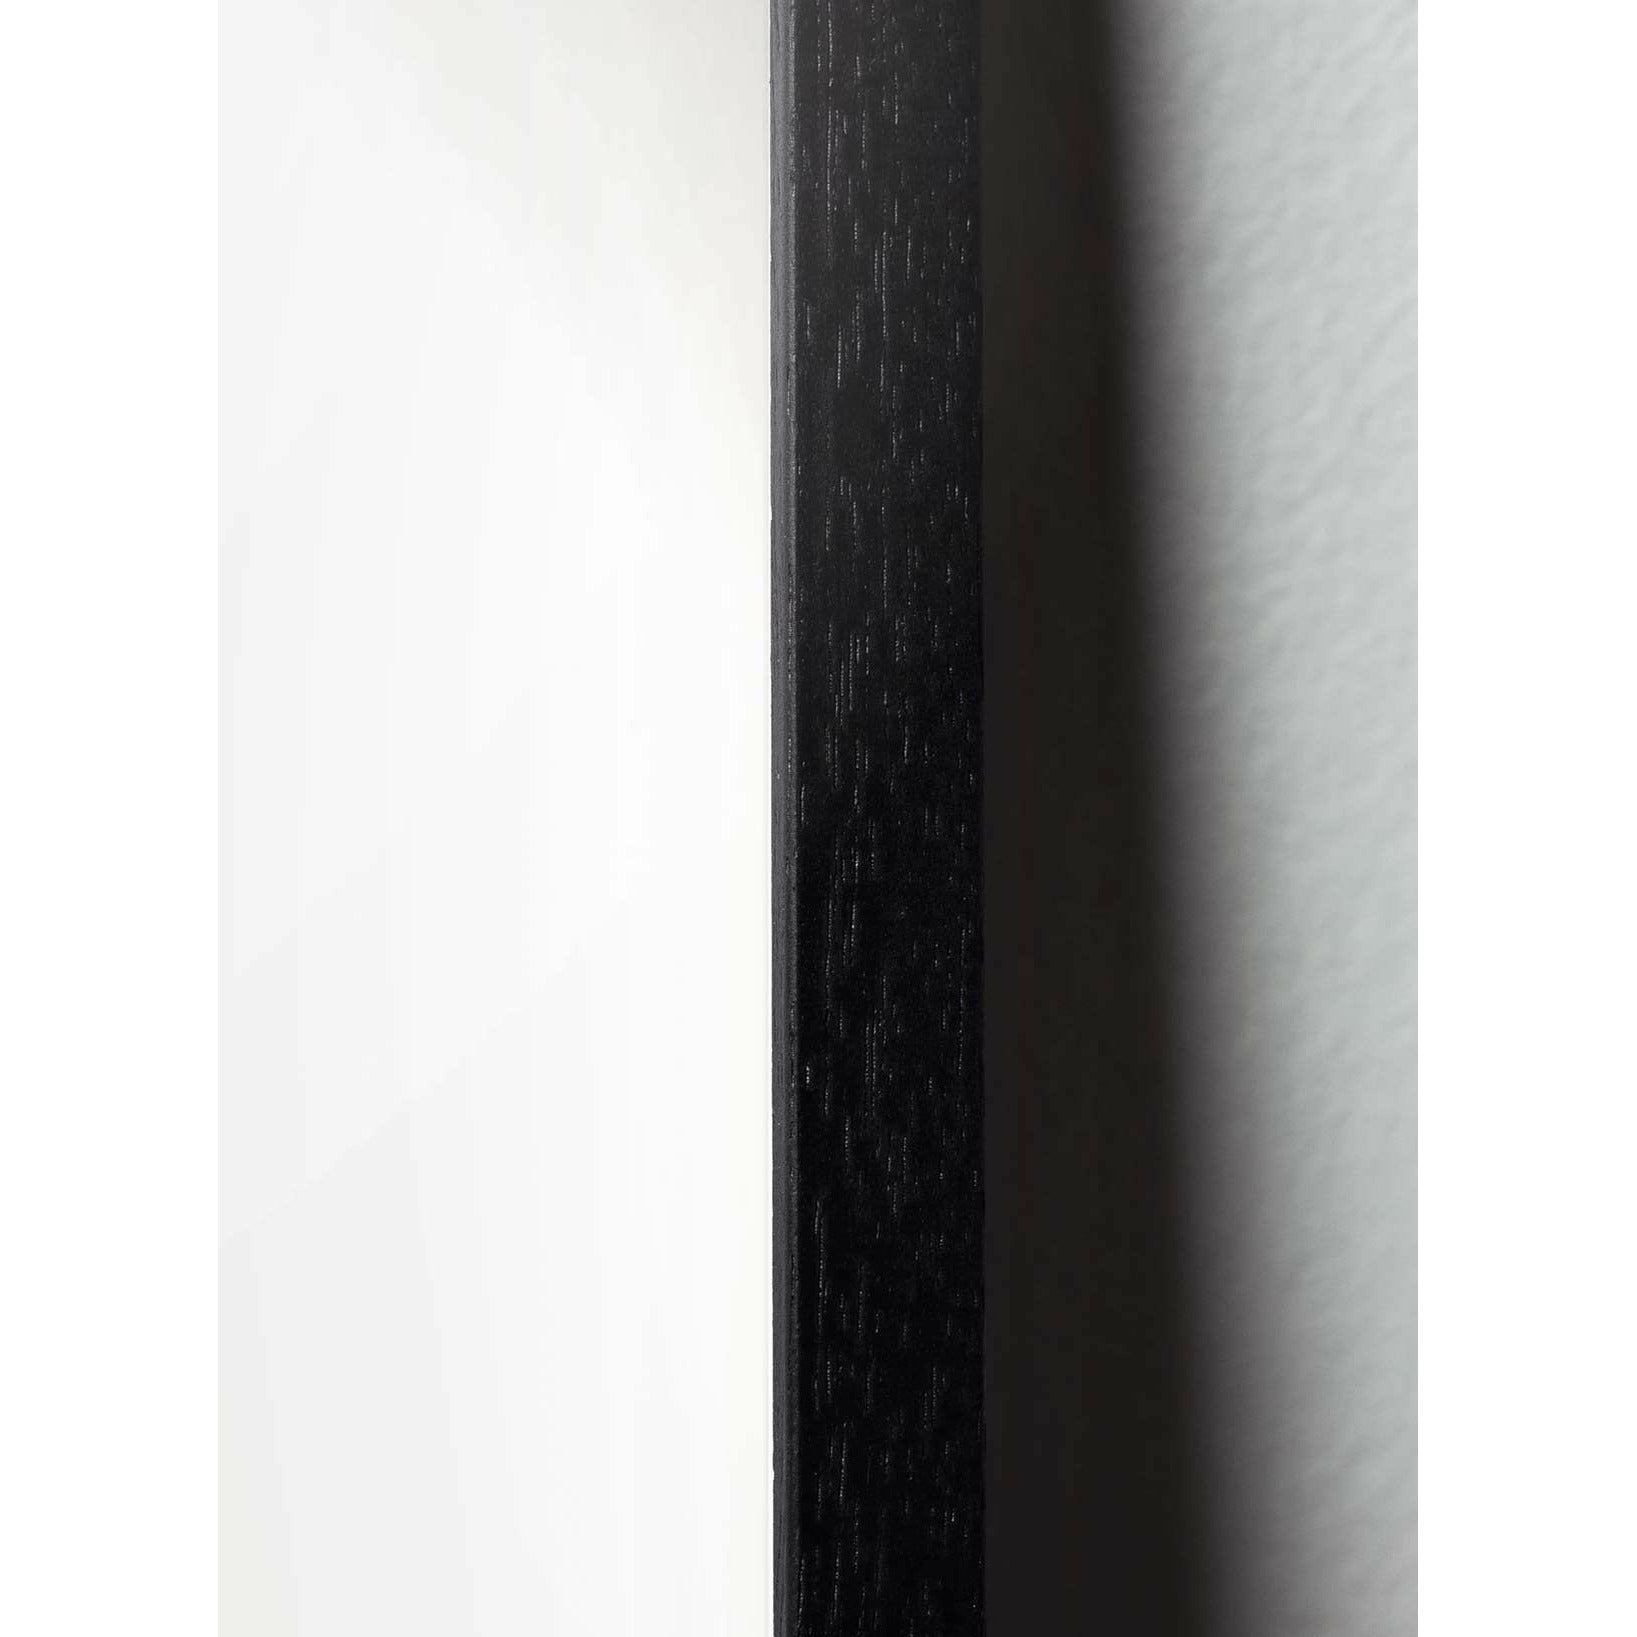 Póster clásico de Pelikan Pelikan, marco en madera lacada negra 30x40 cm, fondo azul oscuro